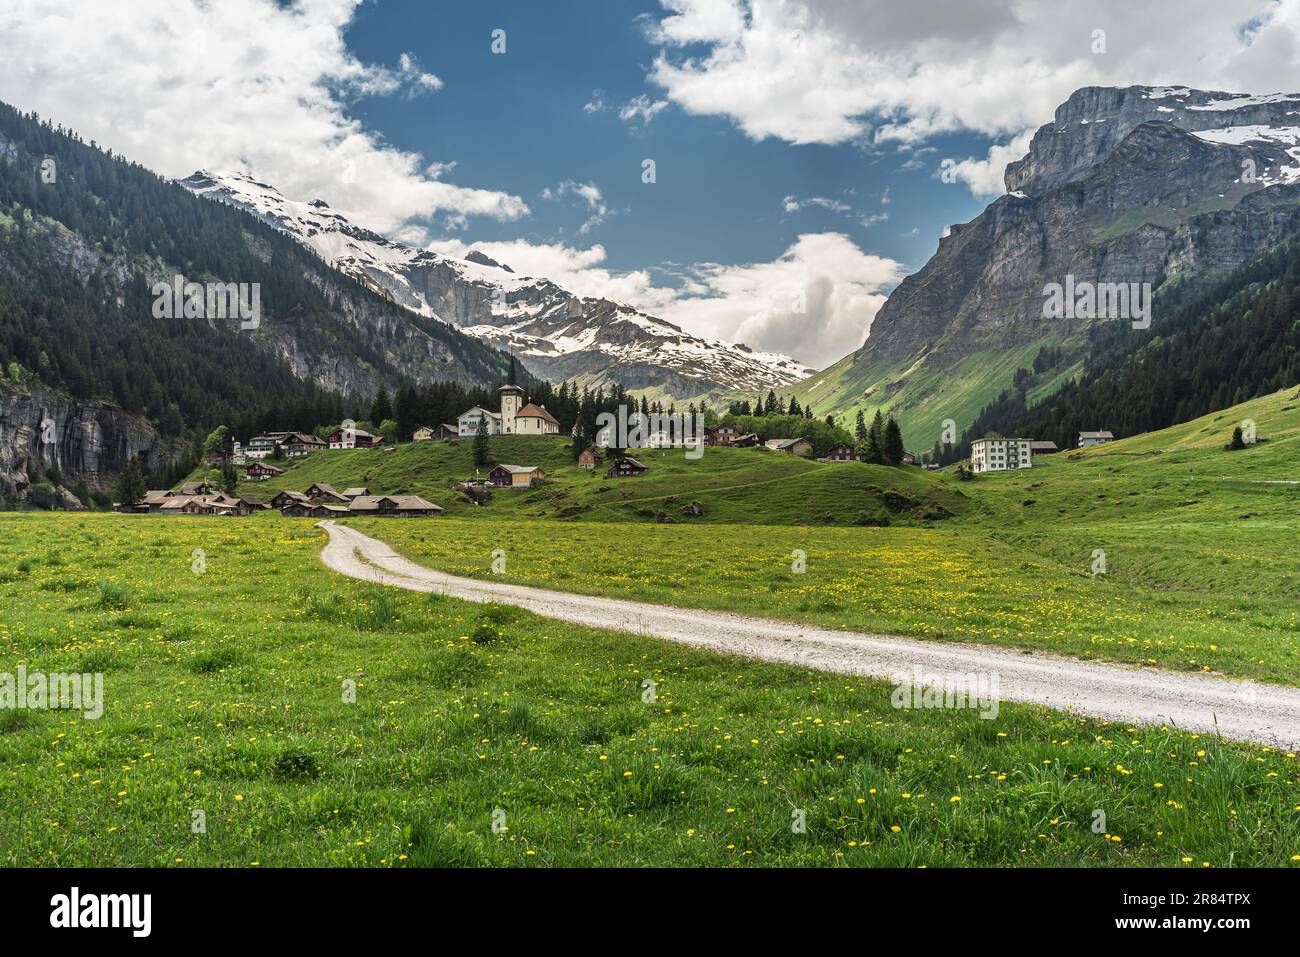 The village of Urnerboden in the Swiss Alps near Klausenpass, Spiringen, Canton Uri, Switzerland Stock Photo